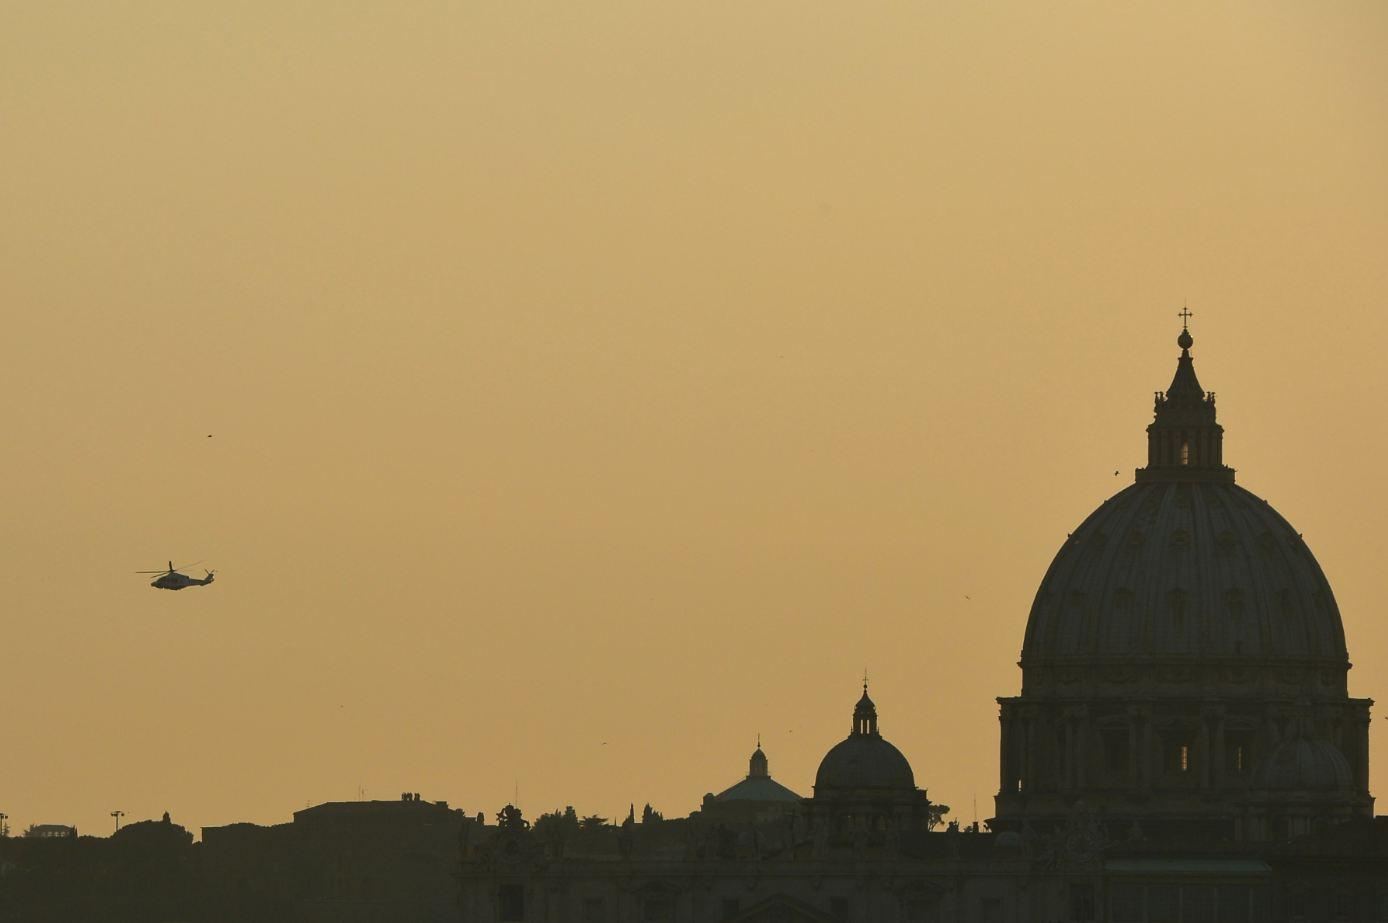 Le pape s'éloigne de la basilique Saint-Pierre à bord d'un appareil qui appartient à la République italienne et est orné d'un drapeau du Saint-Siège. [GABRIEL BOUYS]